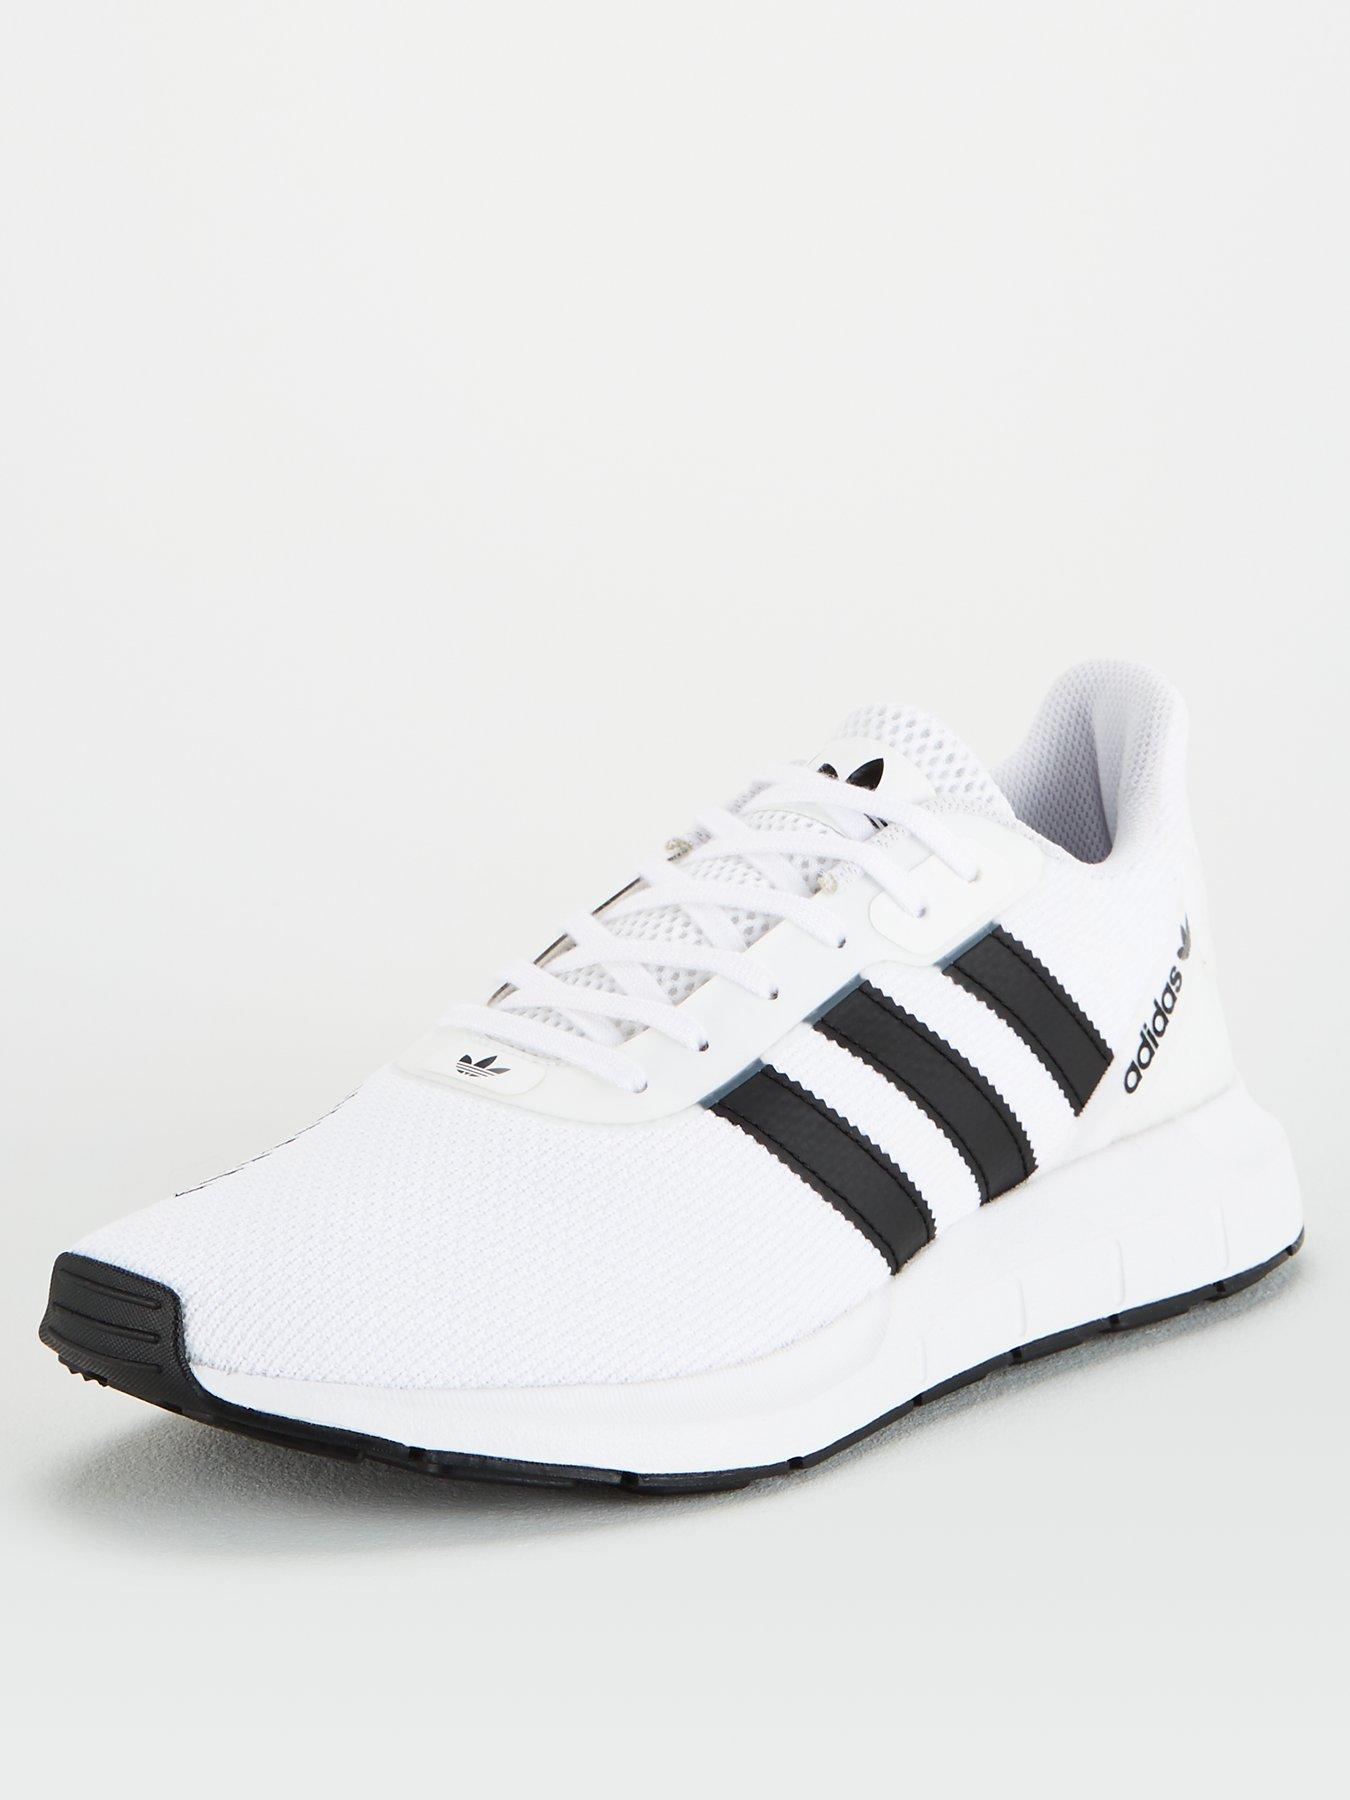 black and white swift run adidas